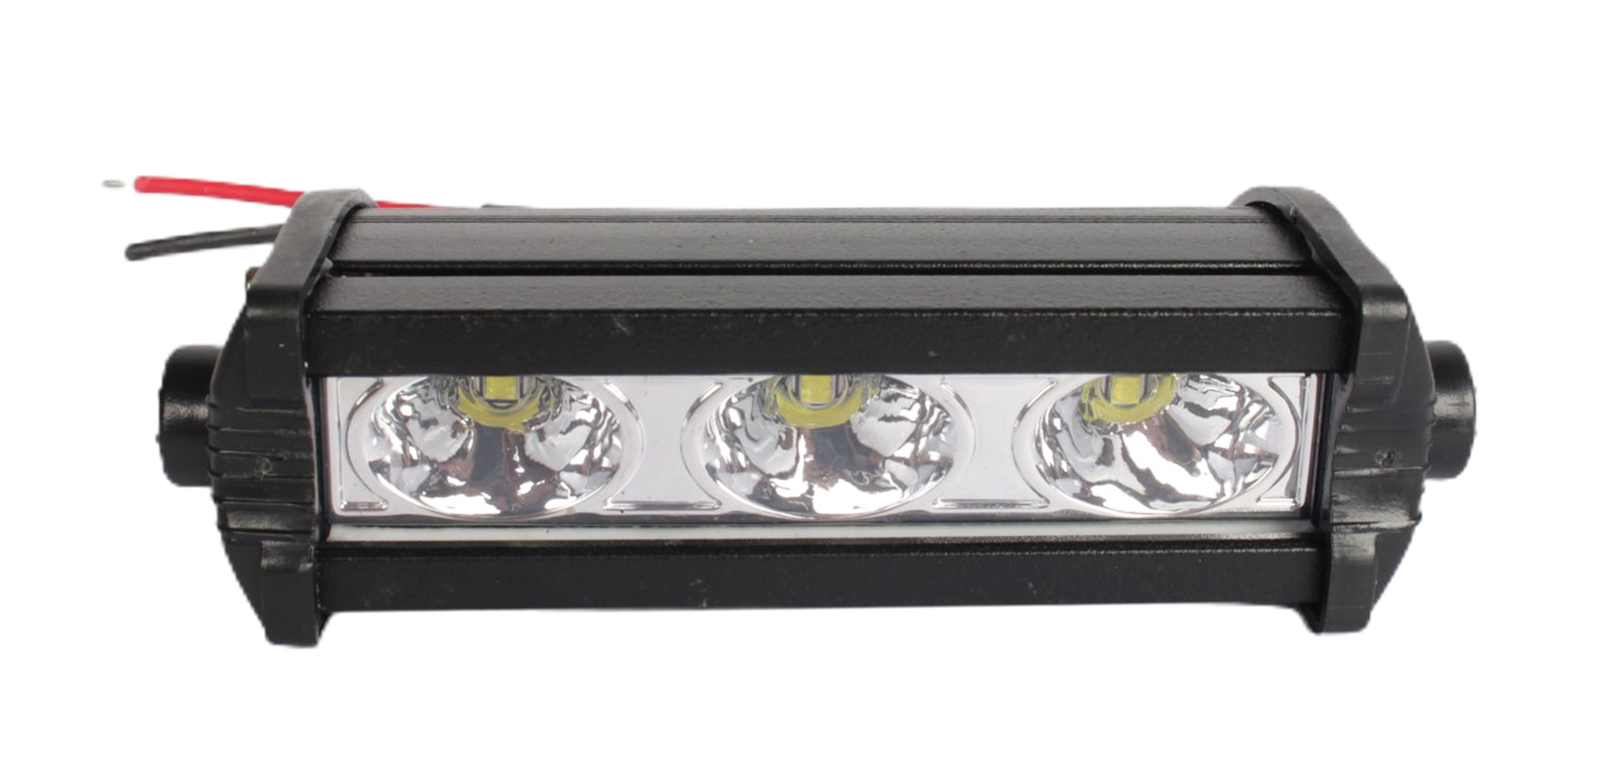 Фара рабочего света MISTAR MIS- E9W 3 LED 10-30V 90х25 мм диодная 1шт. фотография №1